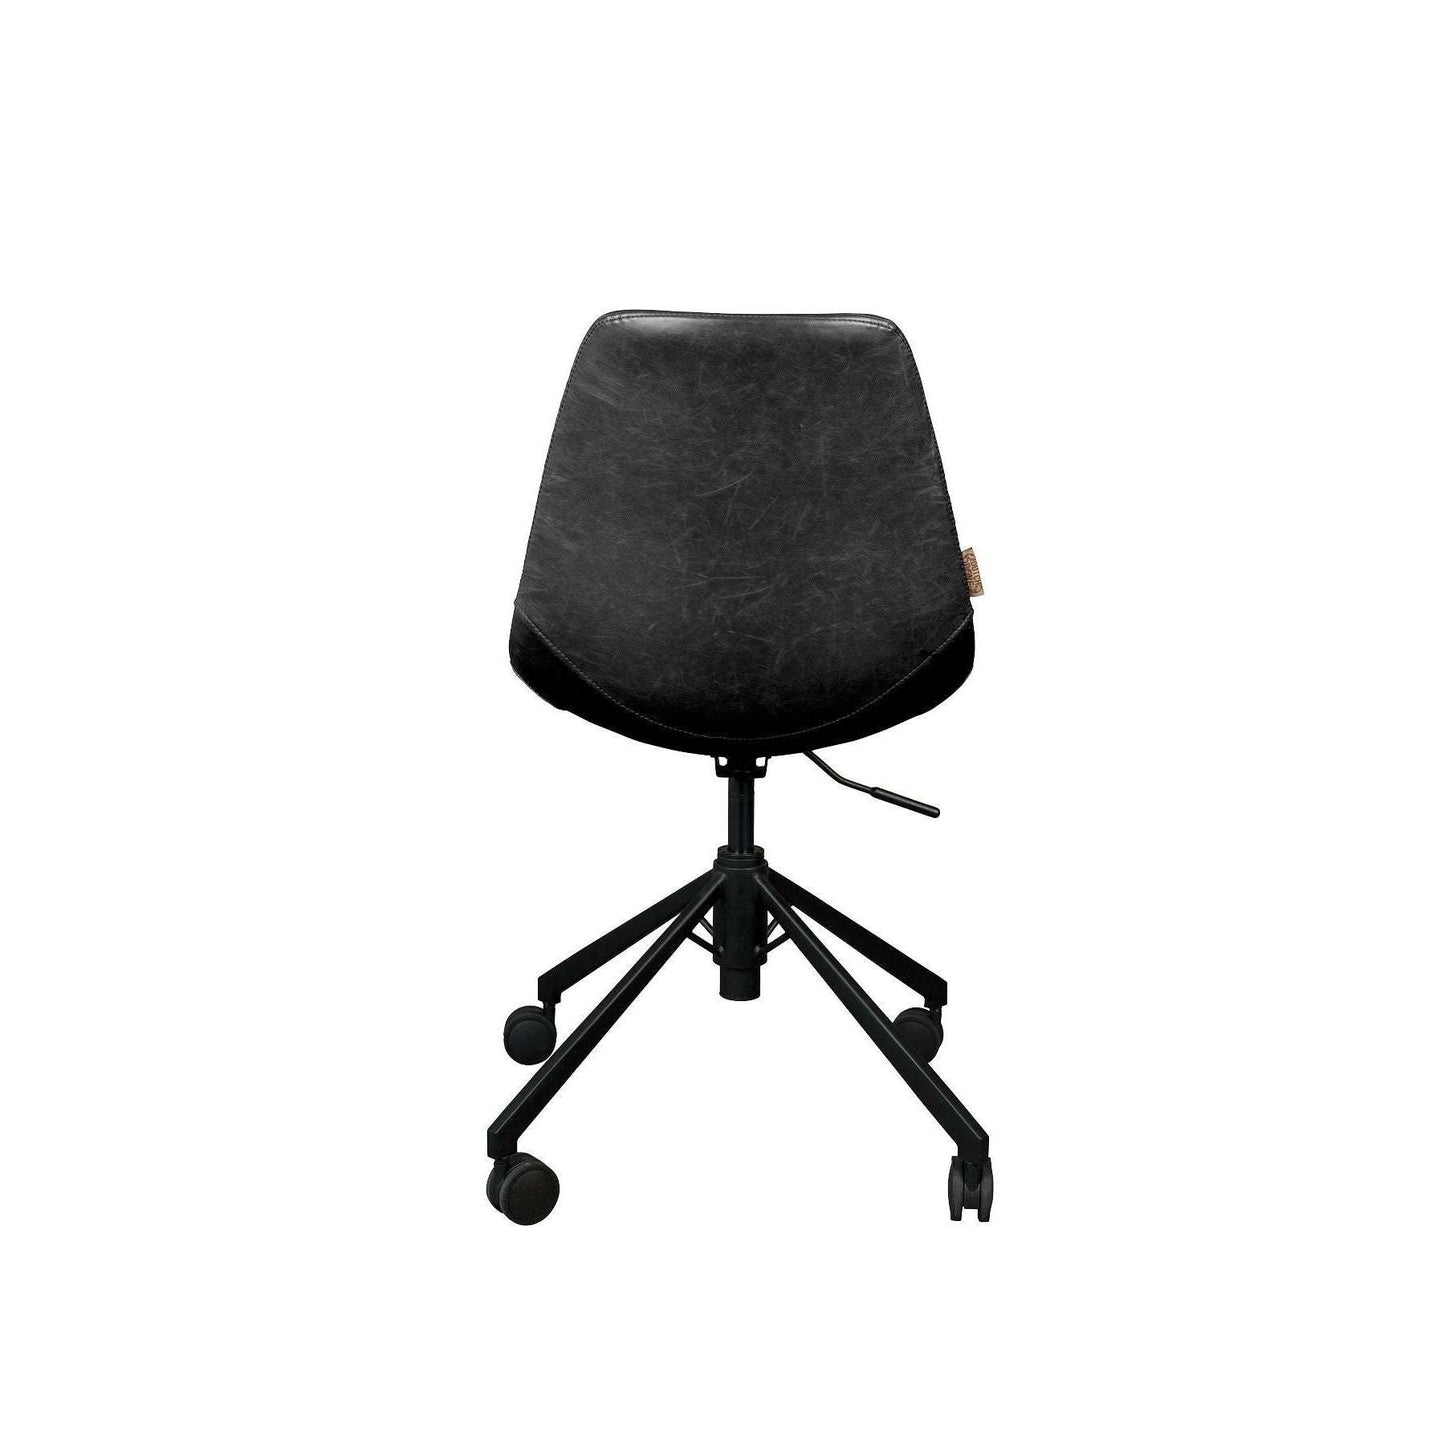 Dutchbone bureaustoel franky zwart 67,5 x 67,5 x 82 / 88,50 cm